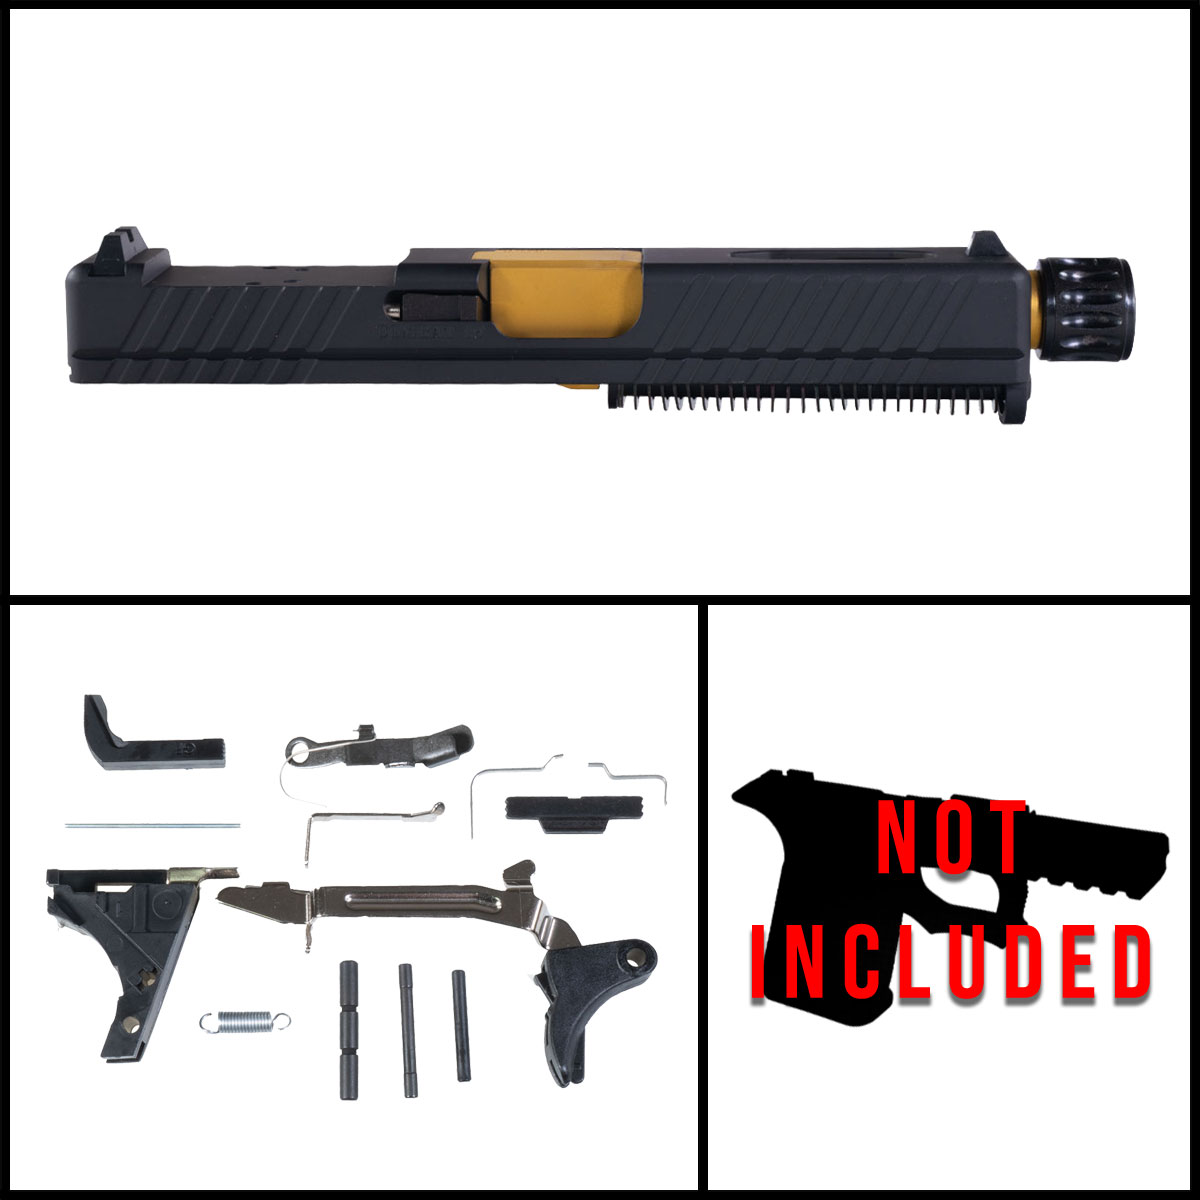 OTD 'Essor' 9mm Full Pistol Build Kit (Everything Minus Frame) - Glock 19 Gen 1-3 Compatible